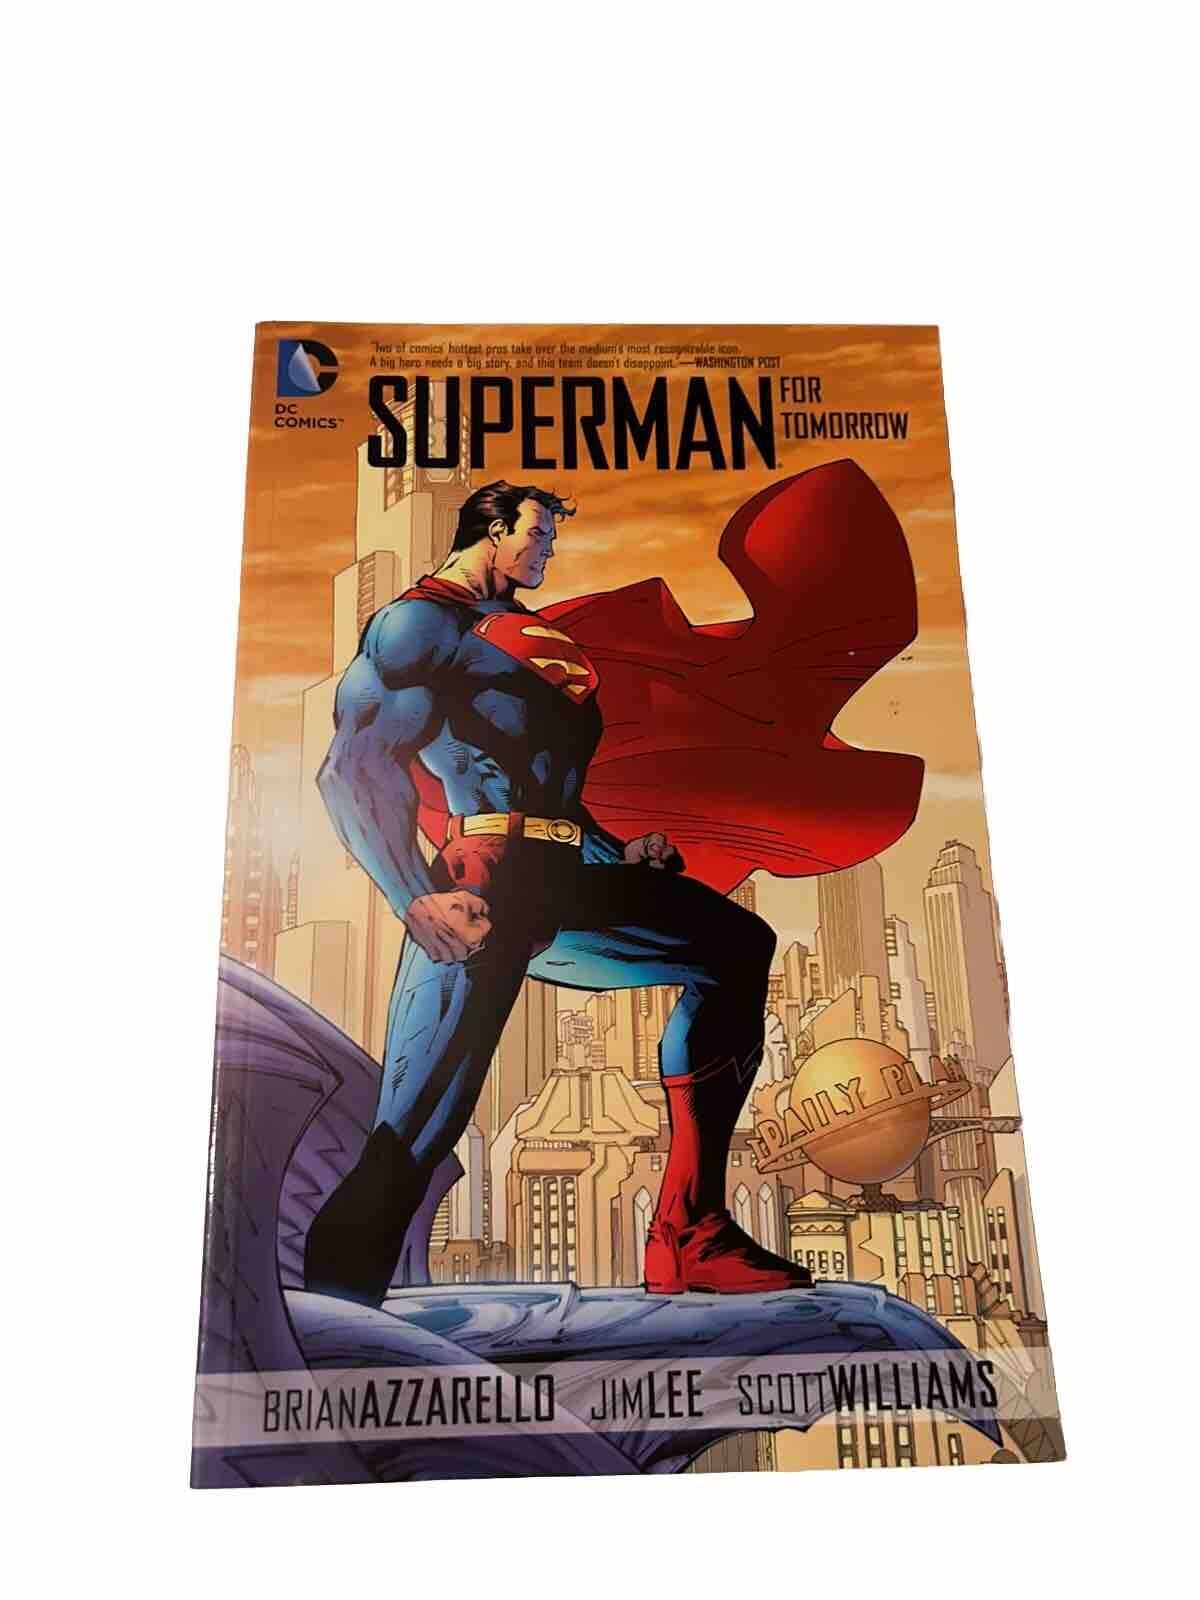 Superman: for Tomorrow (DC Comics April 2013)